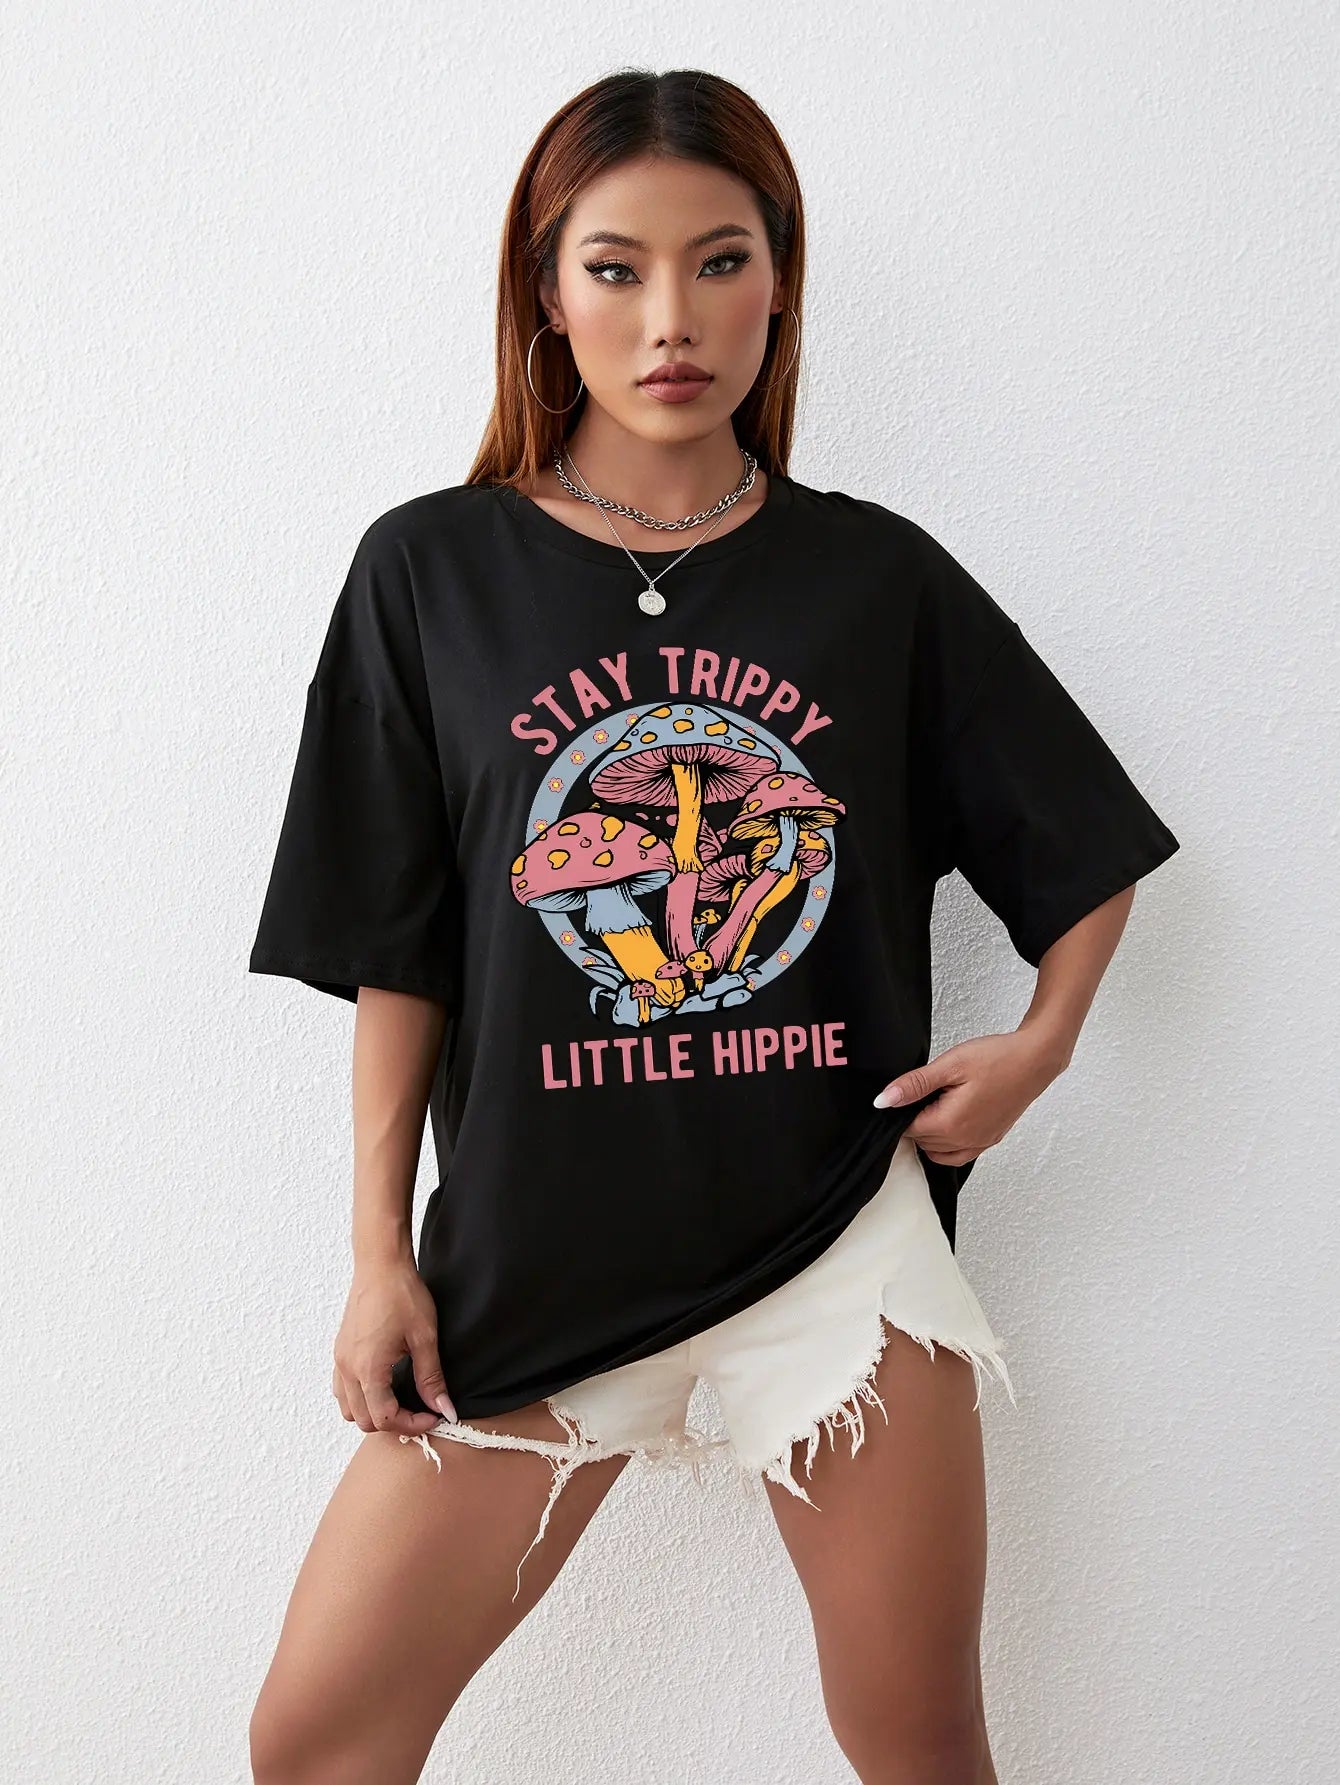 Stay Trippy Little Hippie Cotton Shirt